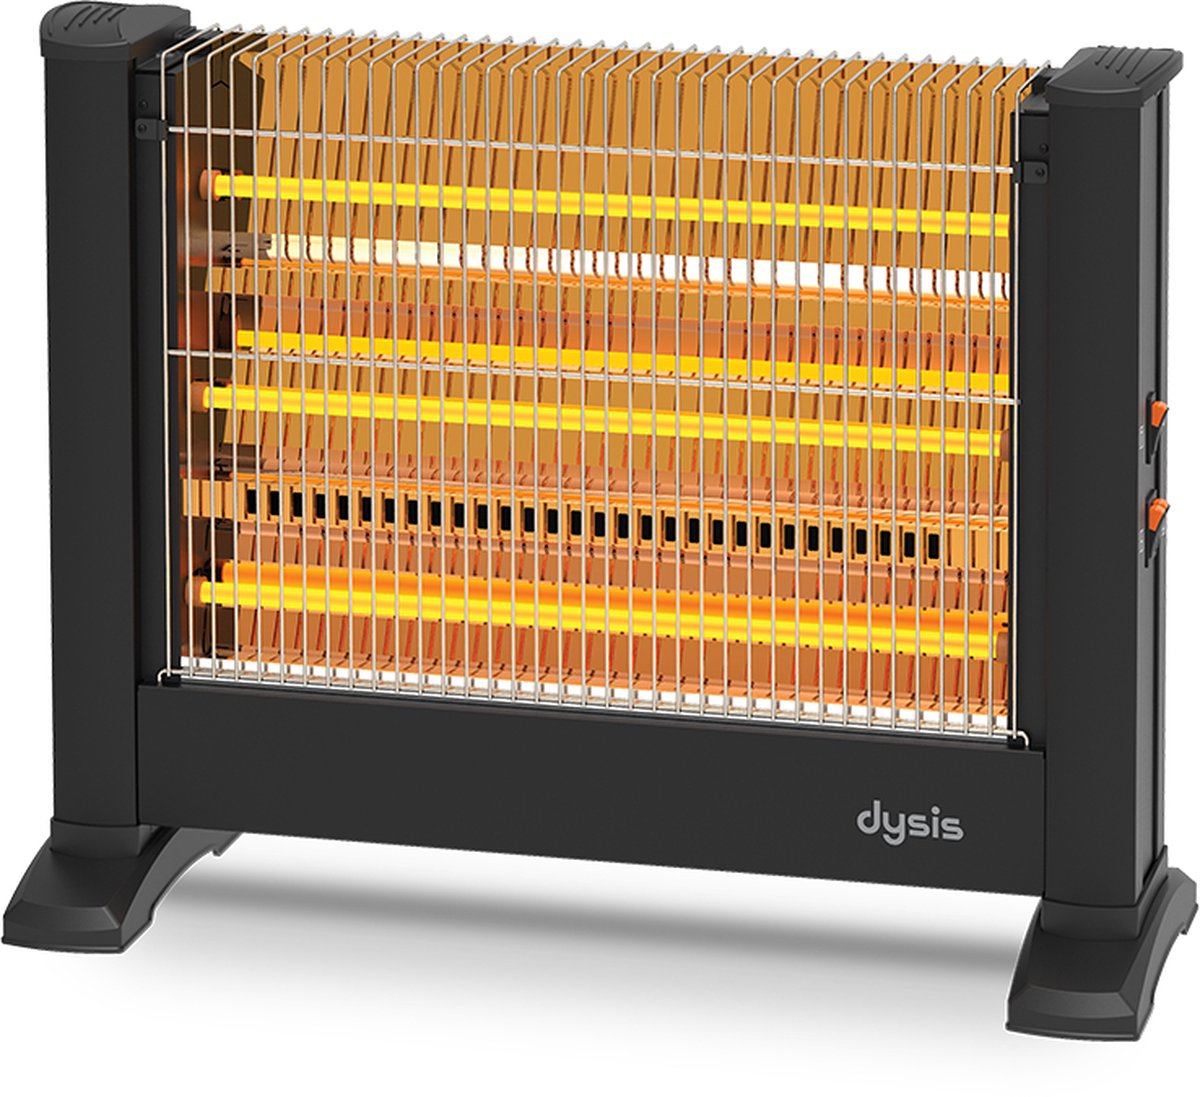 Dysis Power 2200W Quartz elektrische kachel - Infrarood kachel - heater - elektrische verwarming